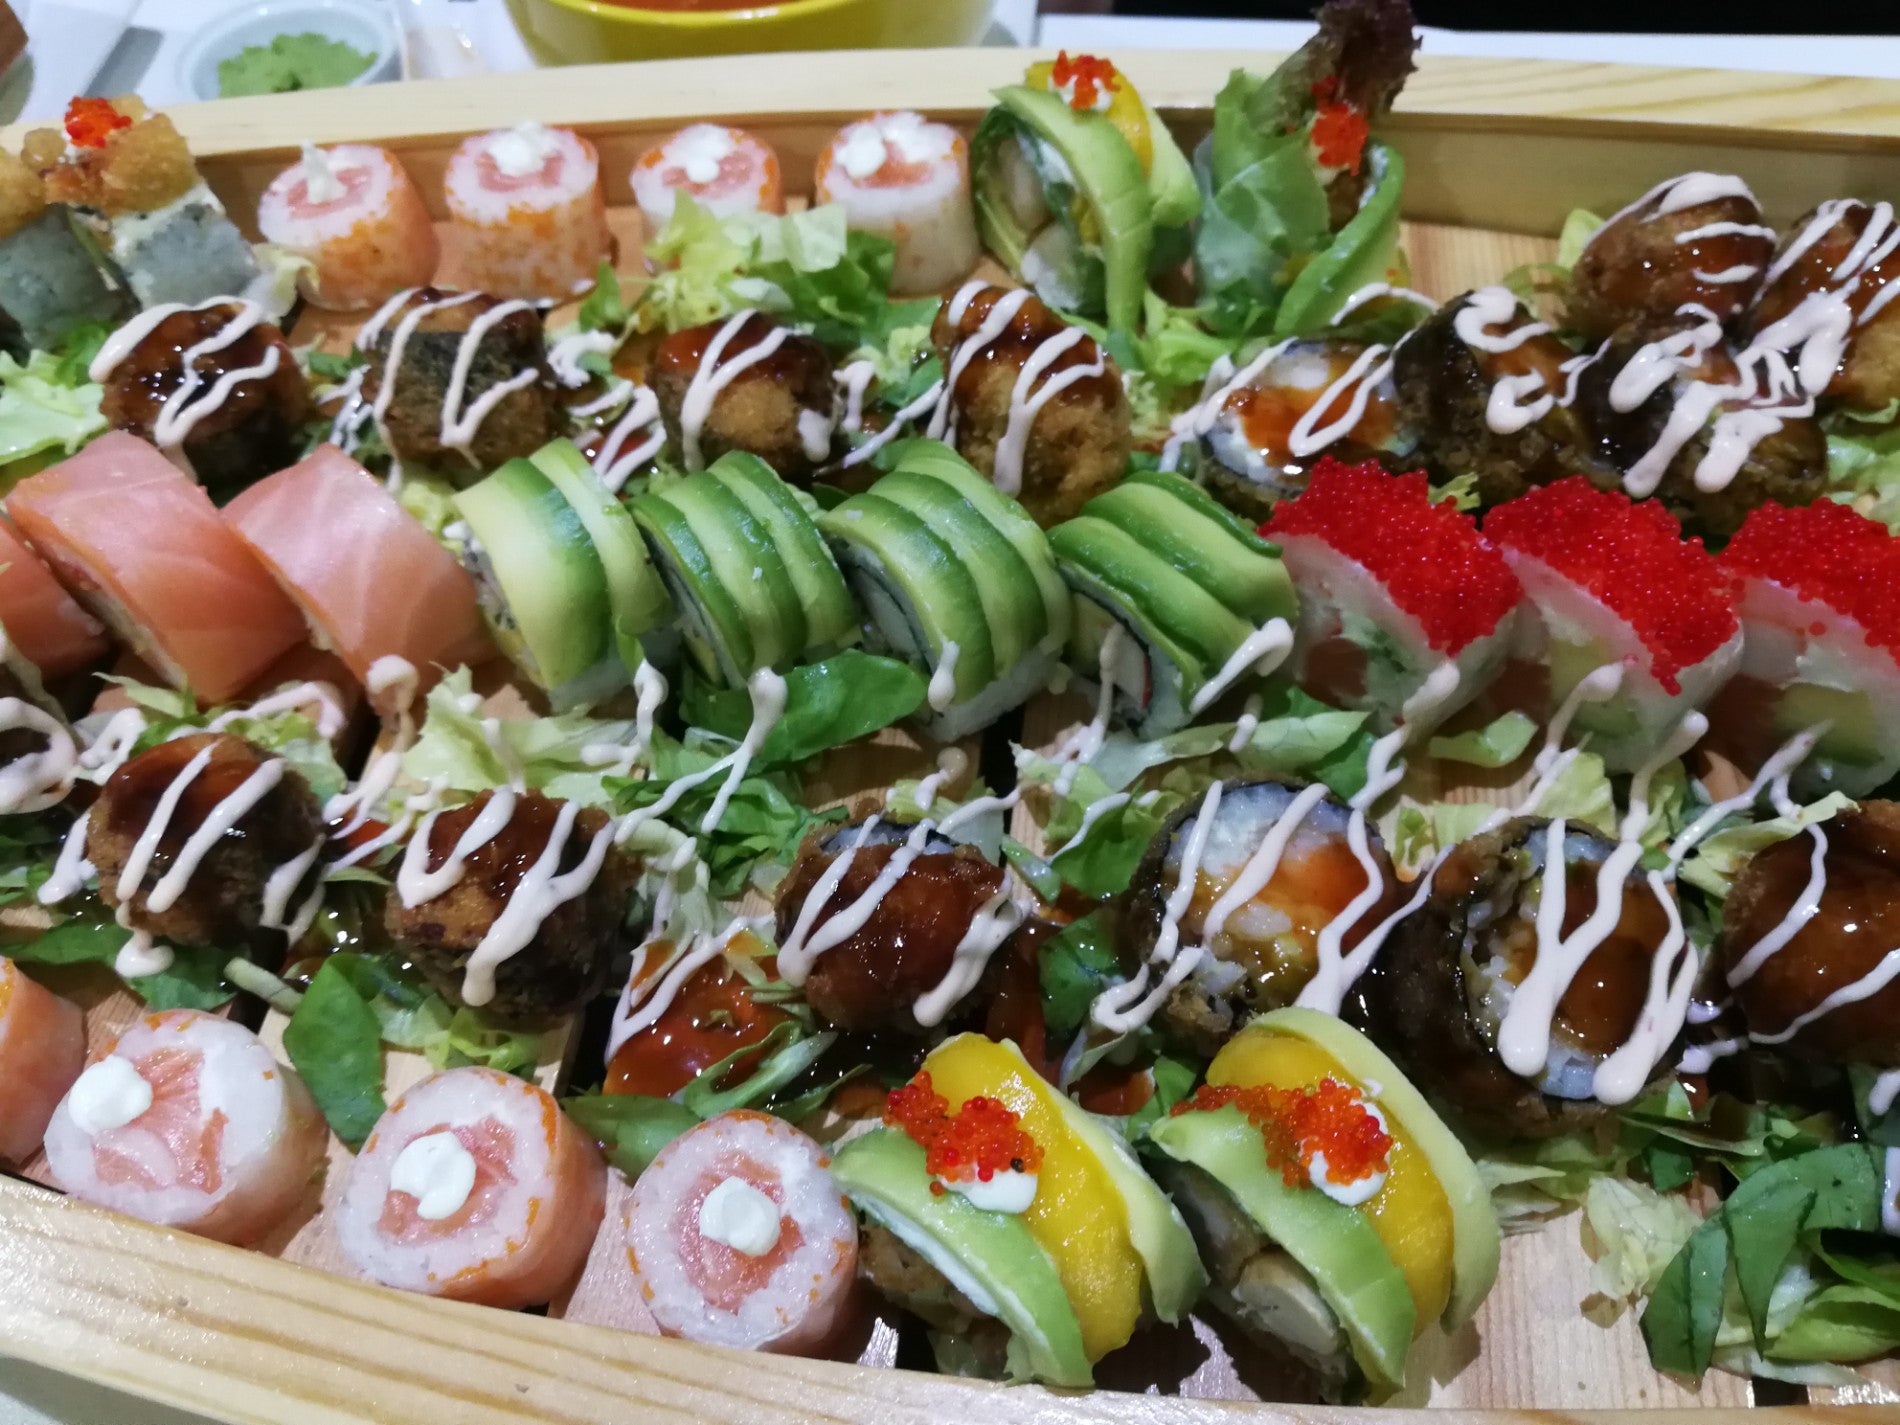 Sushi House